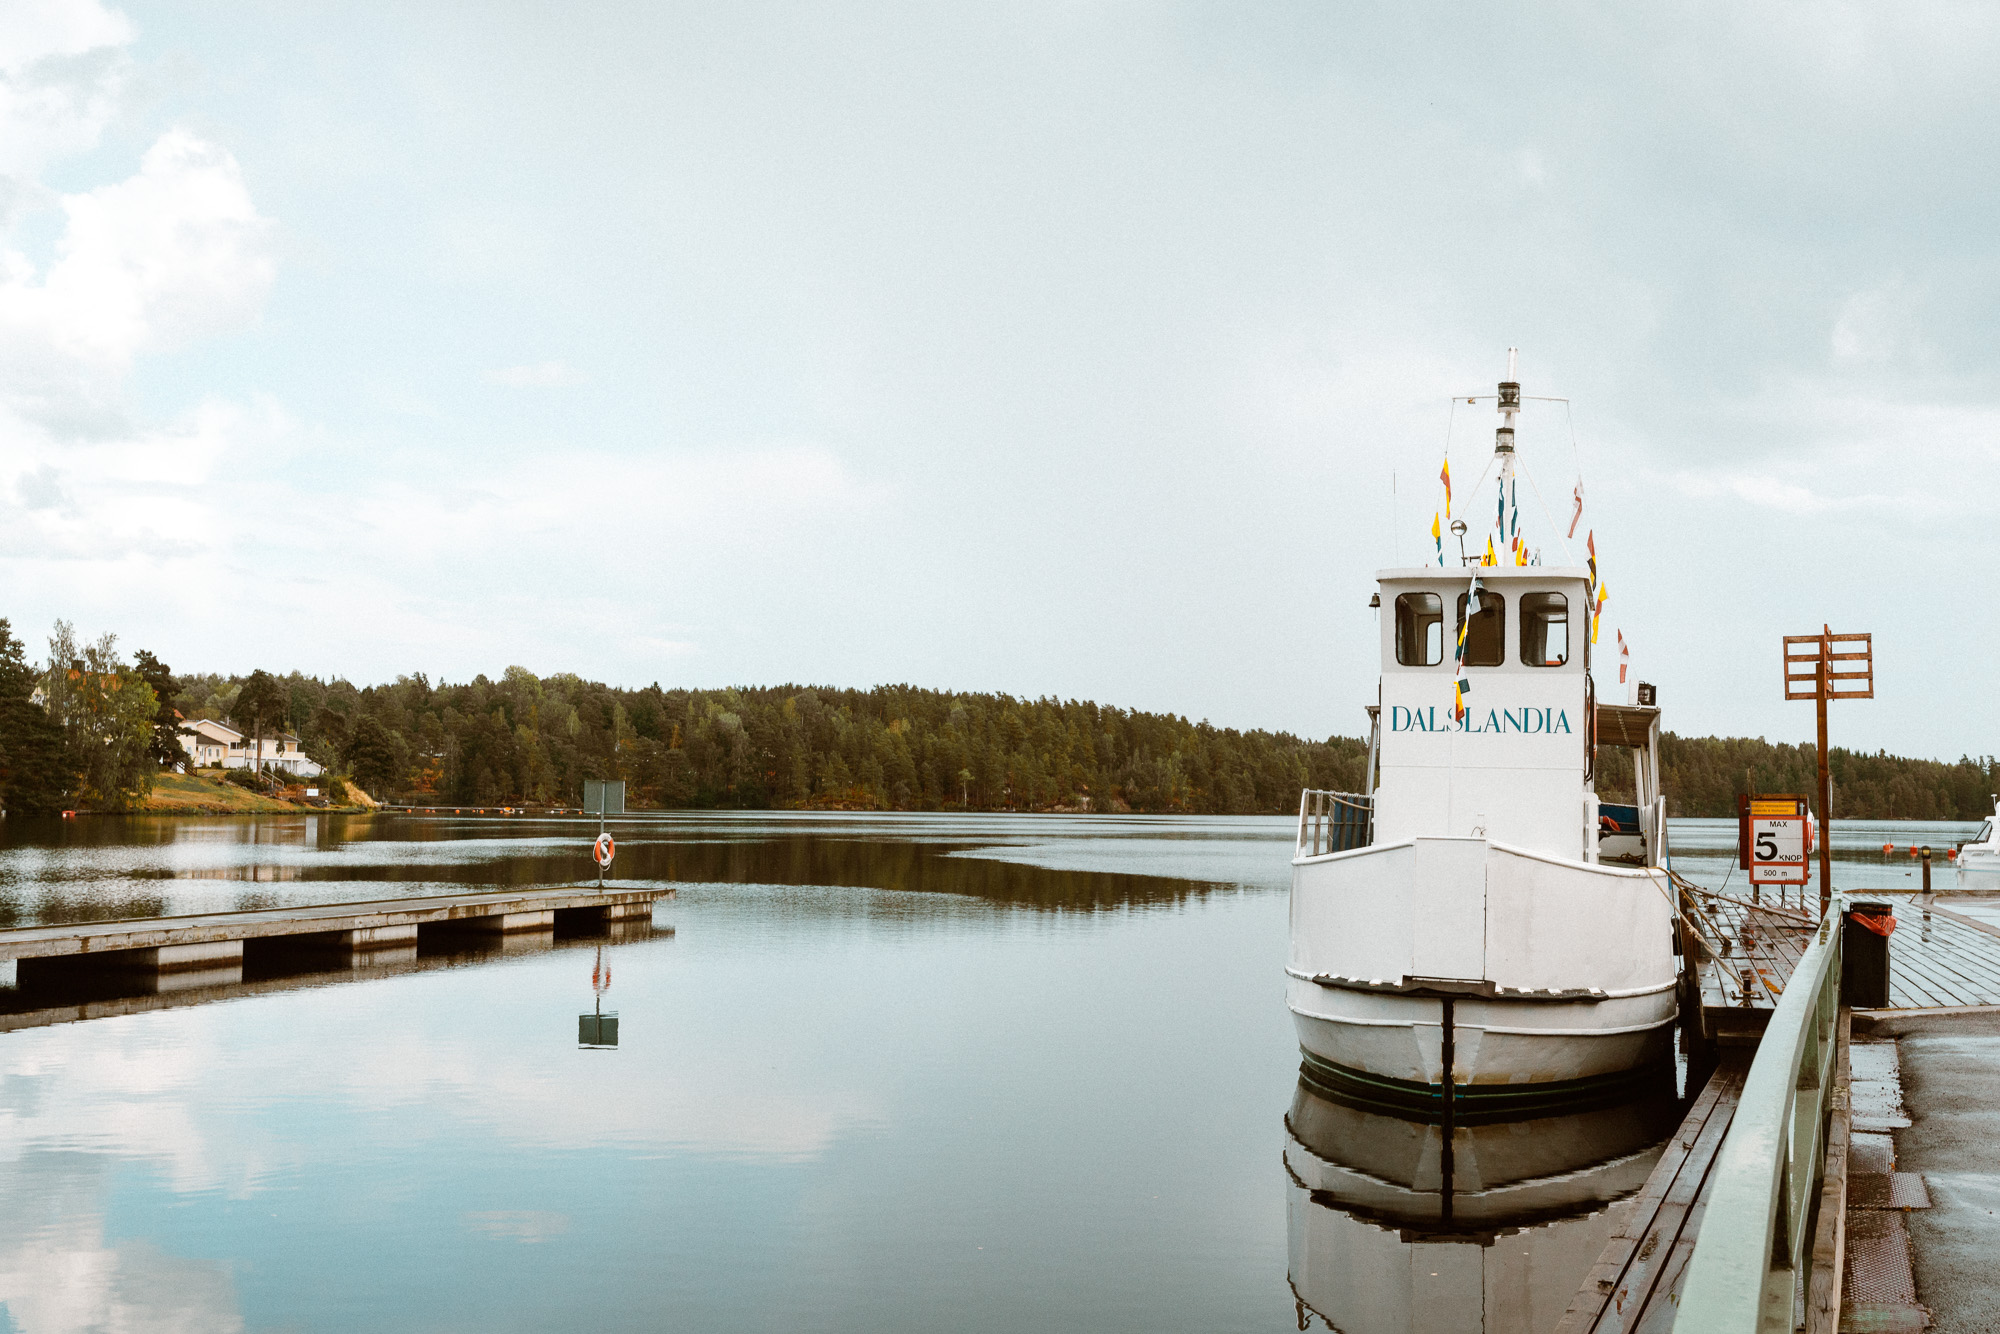 Dalsland Canal | West Sweden Travel Guide via @finduslost